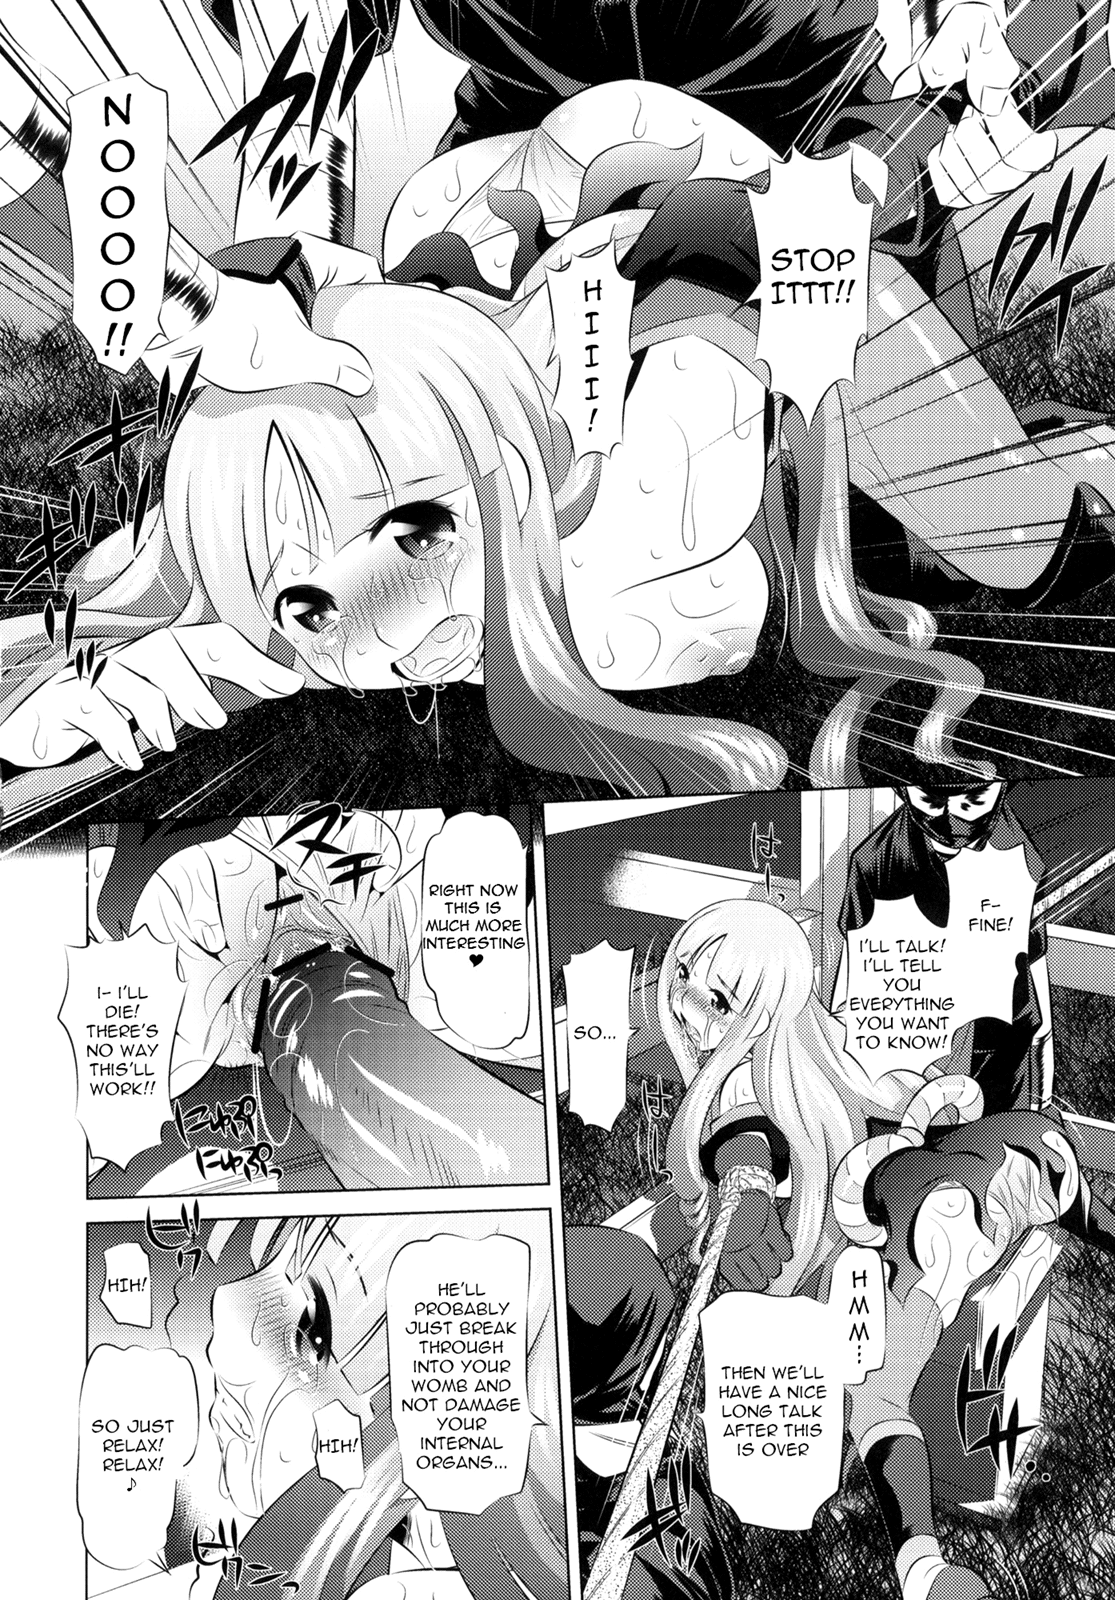 Togame vs Horse hentai manga picture 17